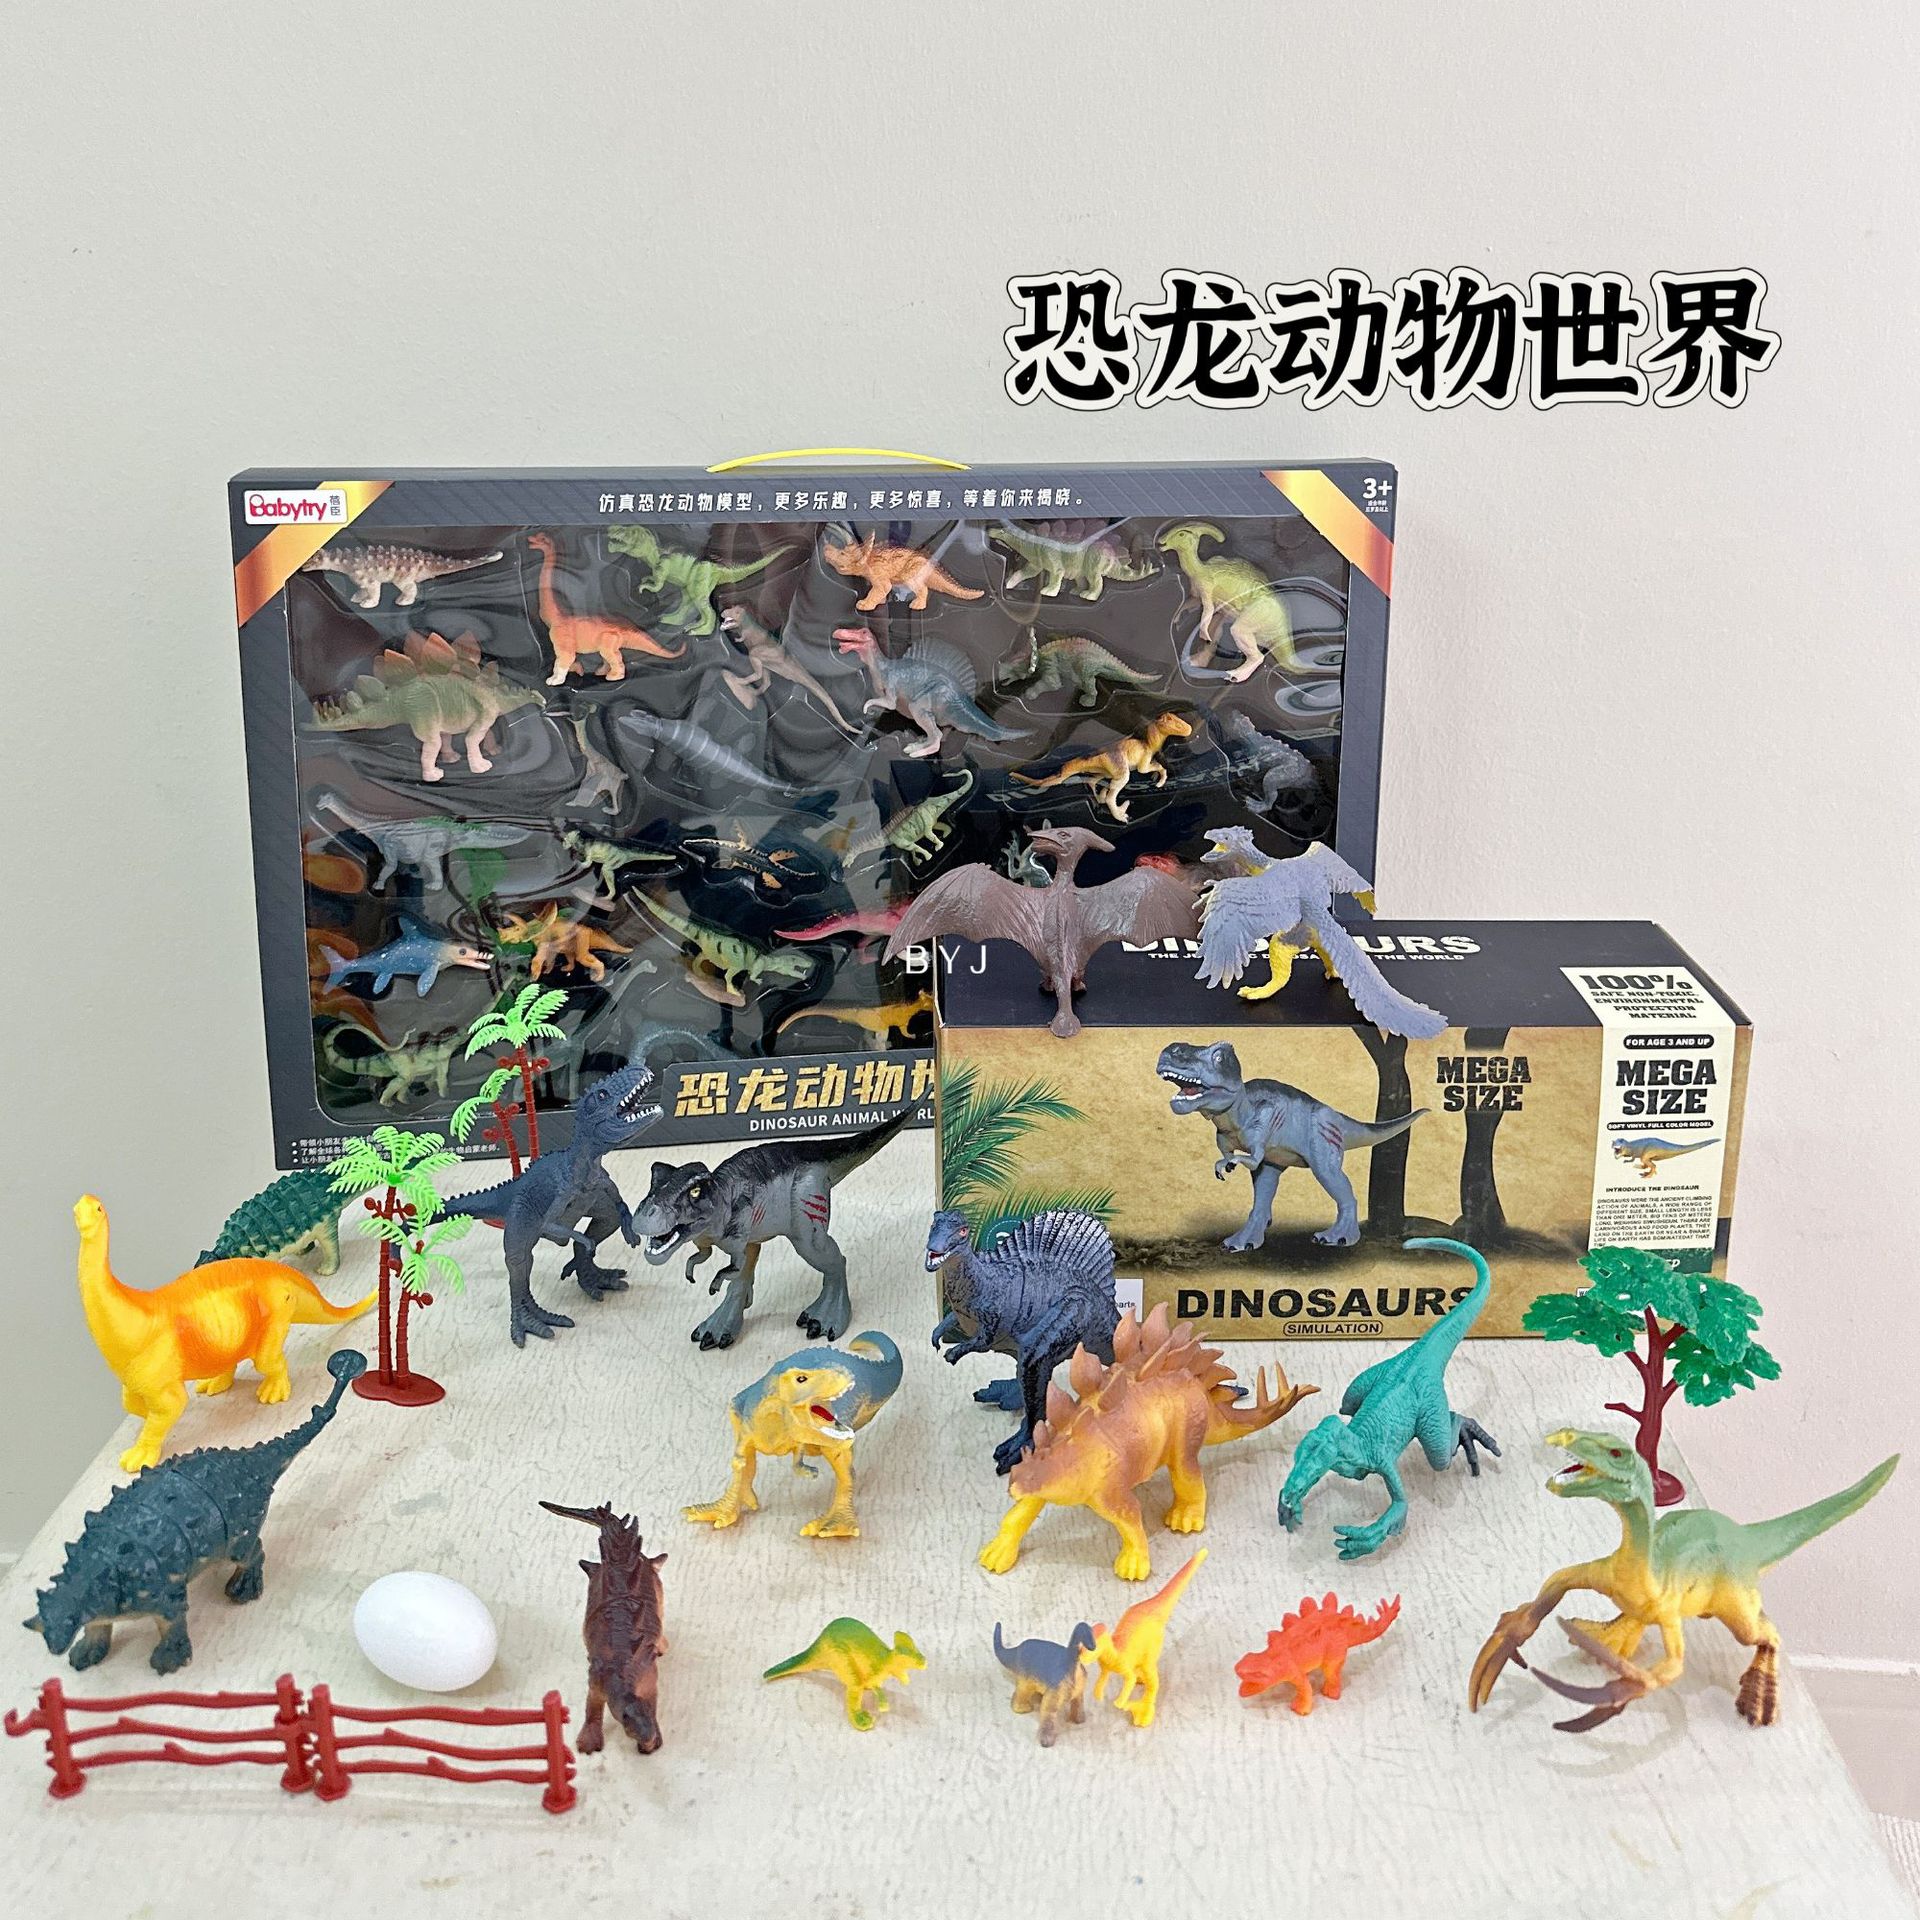 恐龙动物世界玩具30件套装仿真恐龙造型模型玩具男孩女孩3-6岁